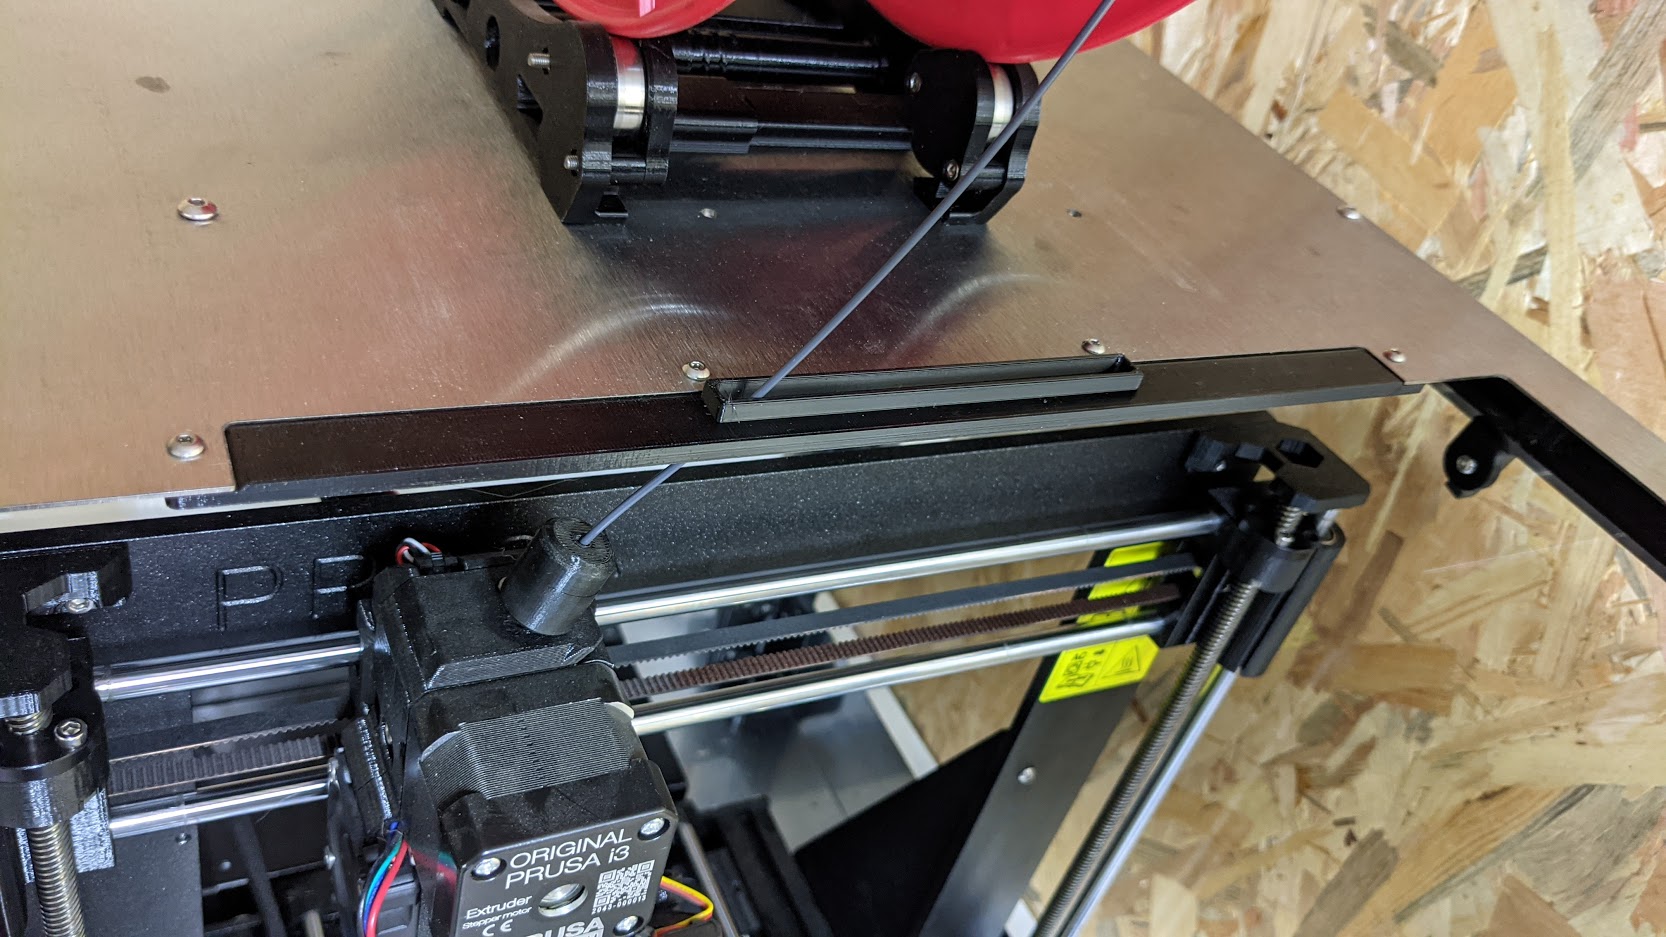 Printer-Box guide filament